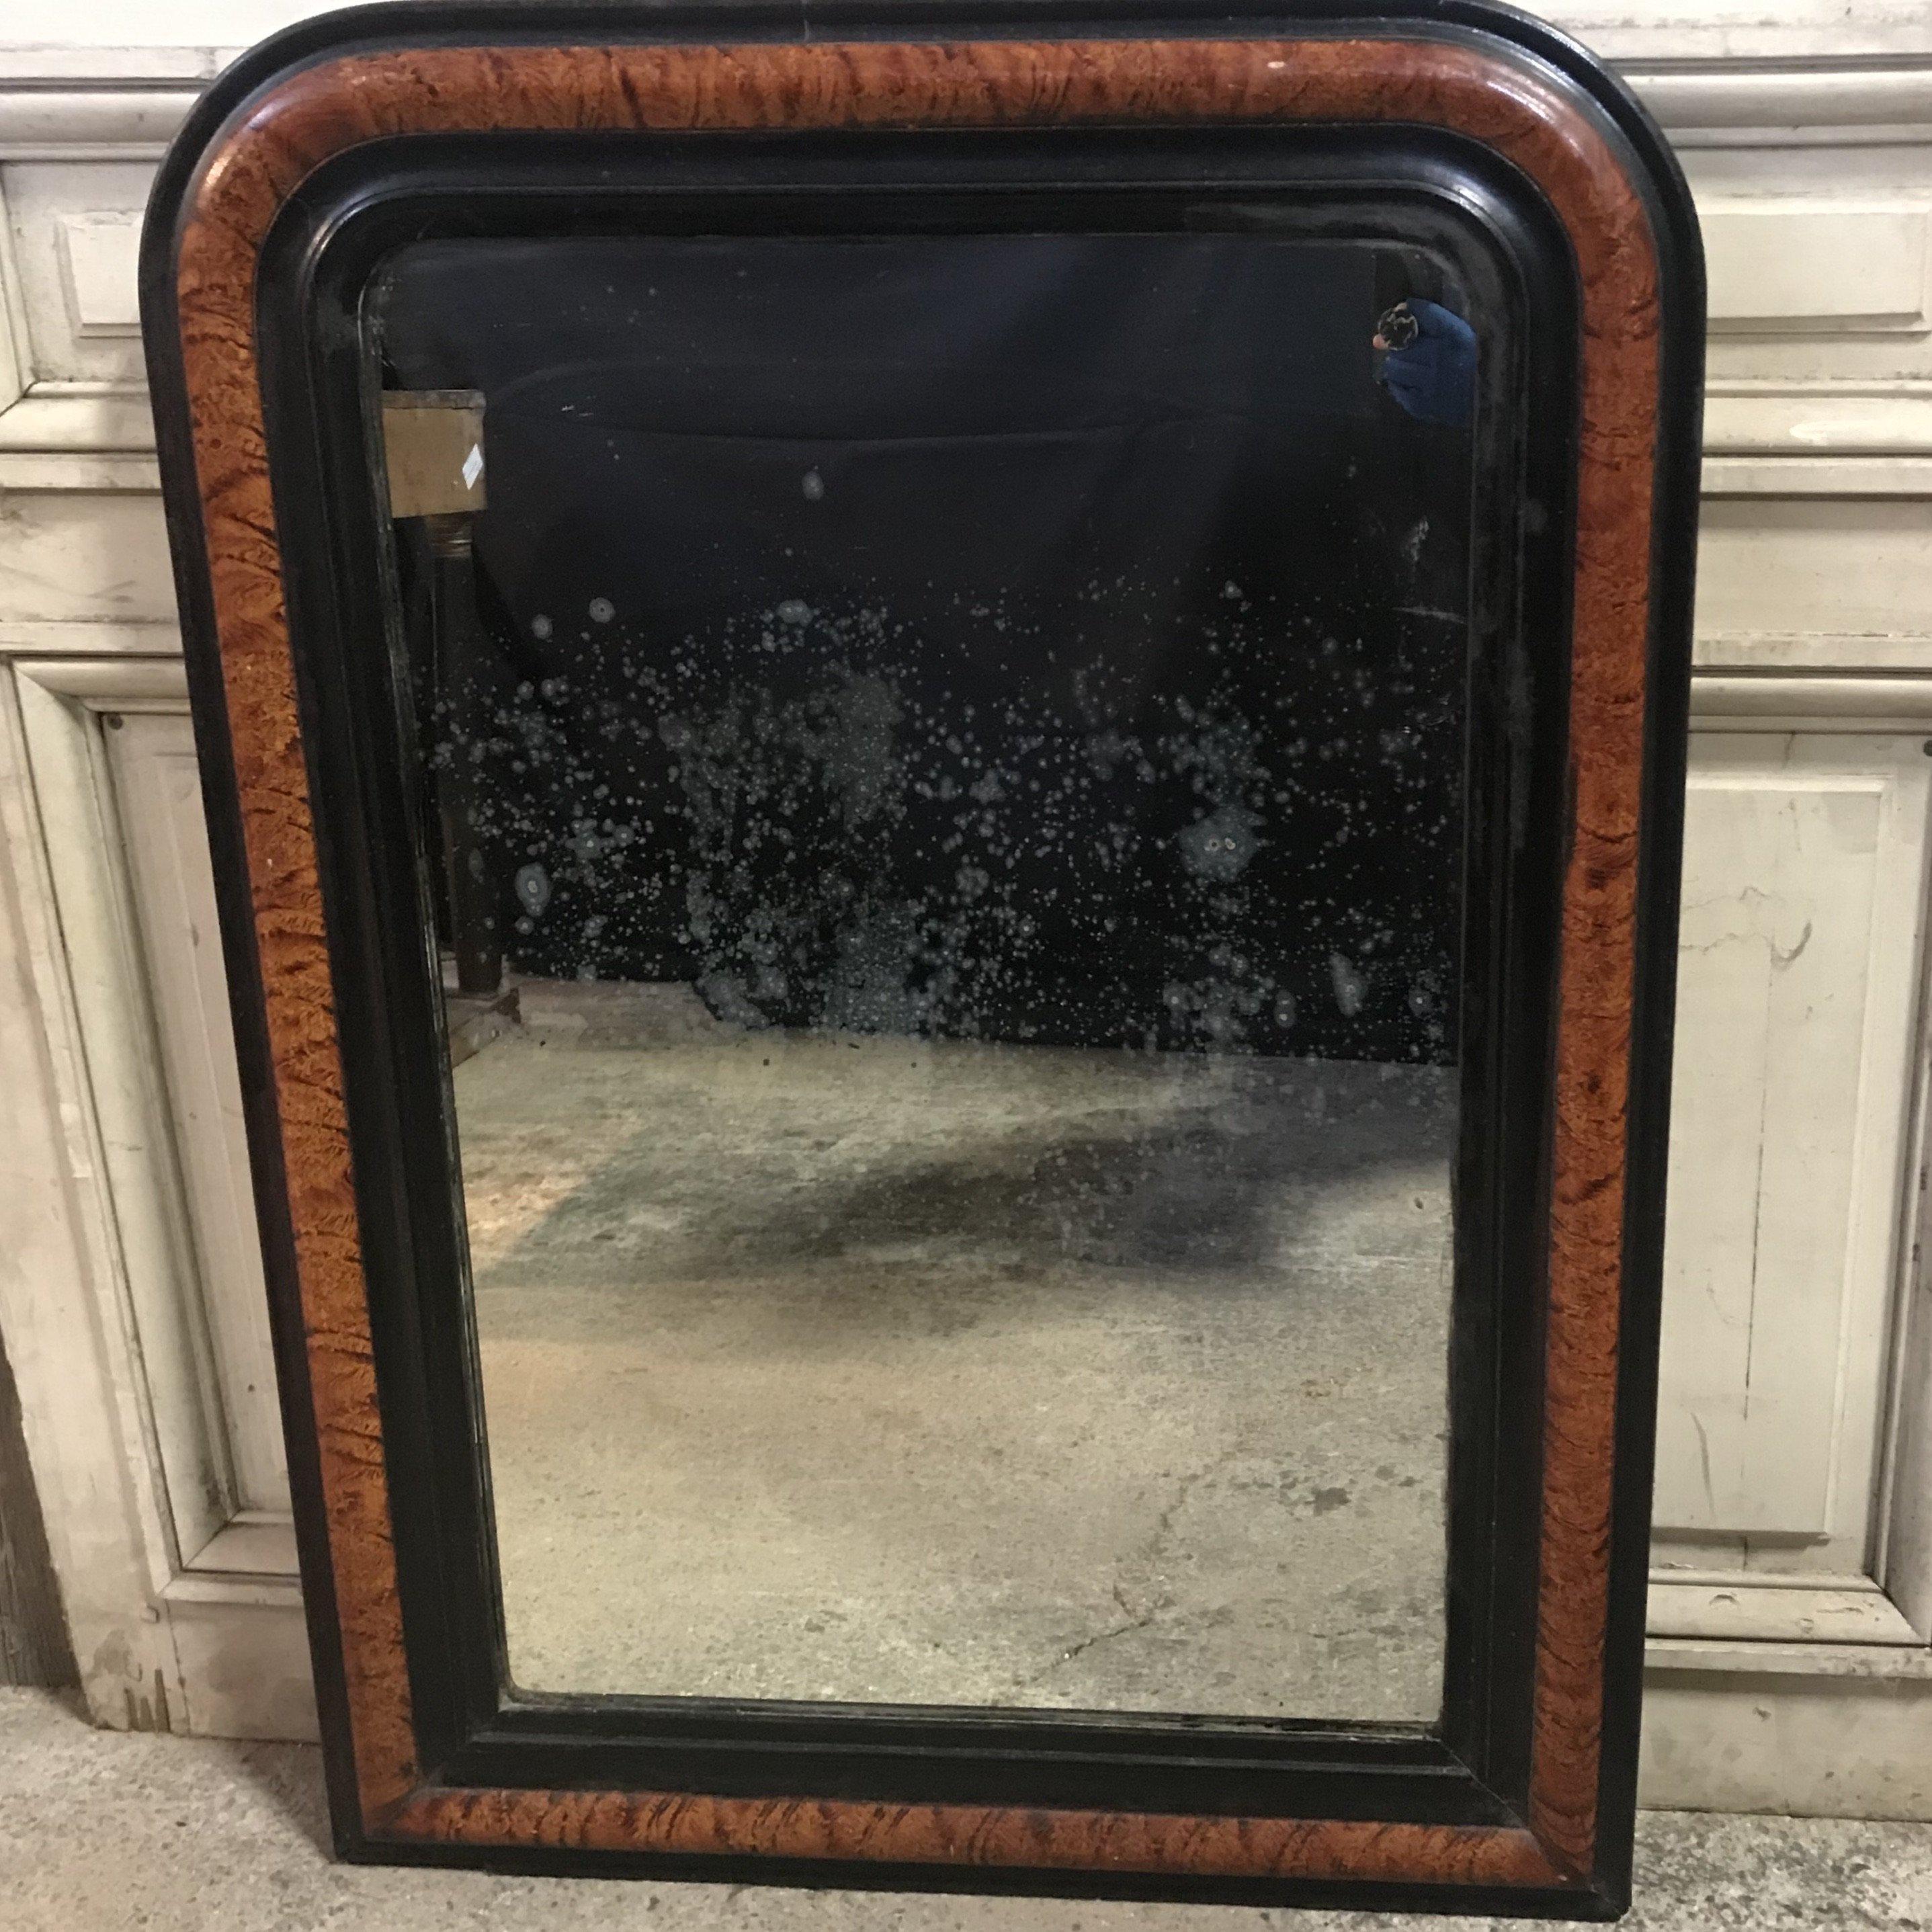 Spiegel von Louis Philippe aus dem späten 19. Jahrhundert mit schöner Kunstholzlackierung auf dem Rahmen, der wie Holzmaserung aussieht, in einem satten braunen Ton mit Ebenholz eingefasst. Der Spiegel selbst weist einige Altersflecken auf, was auf